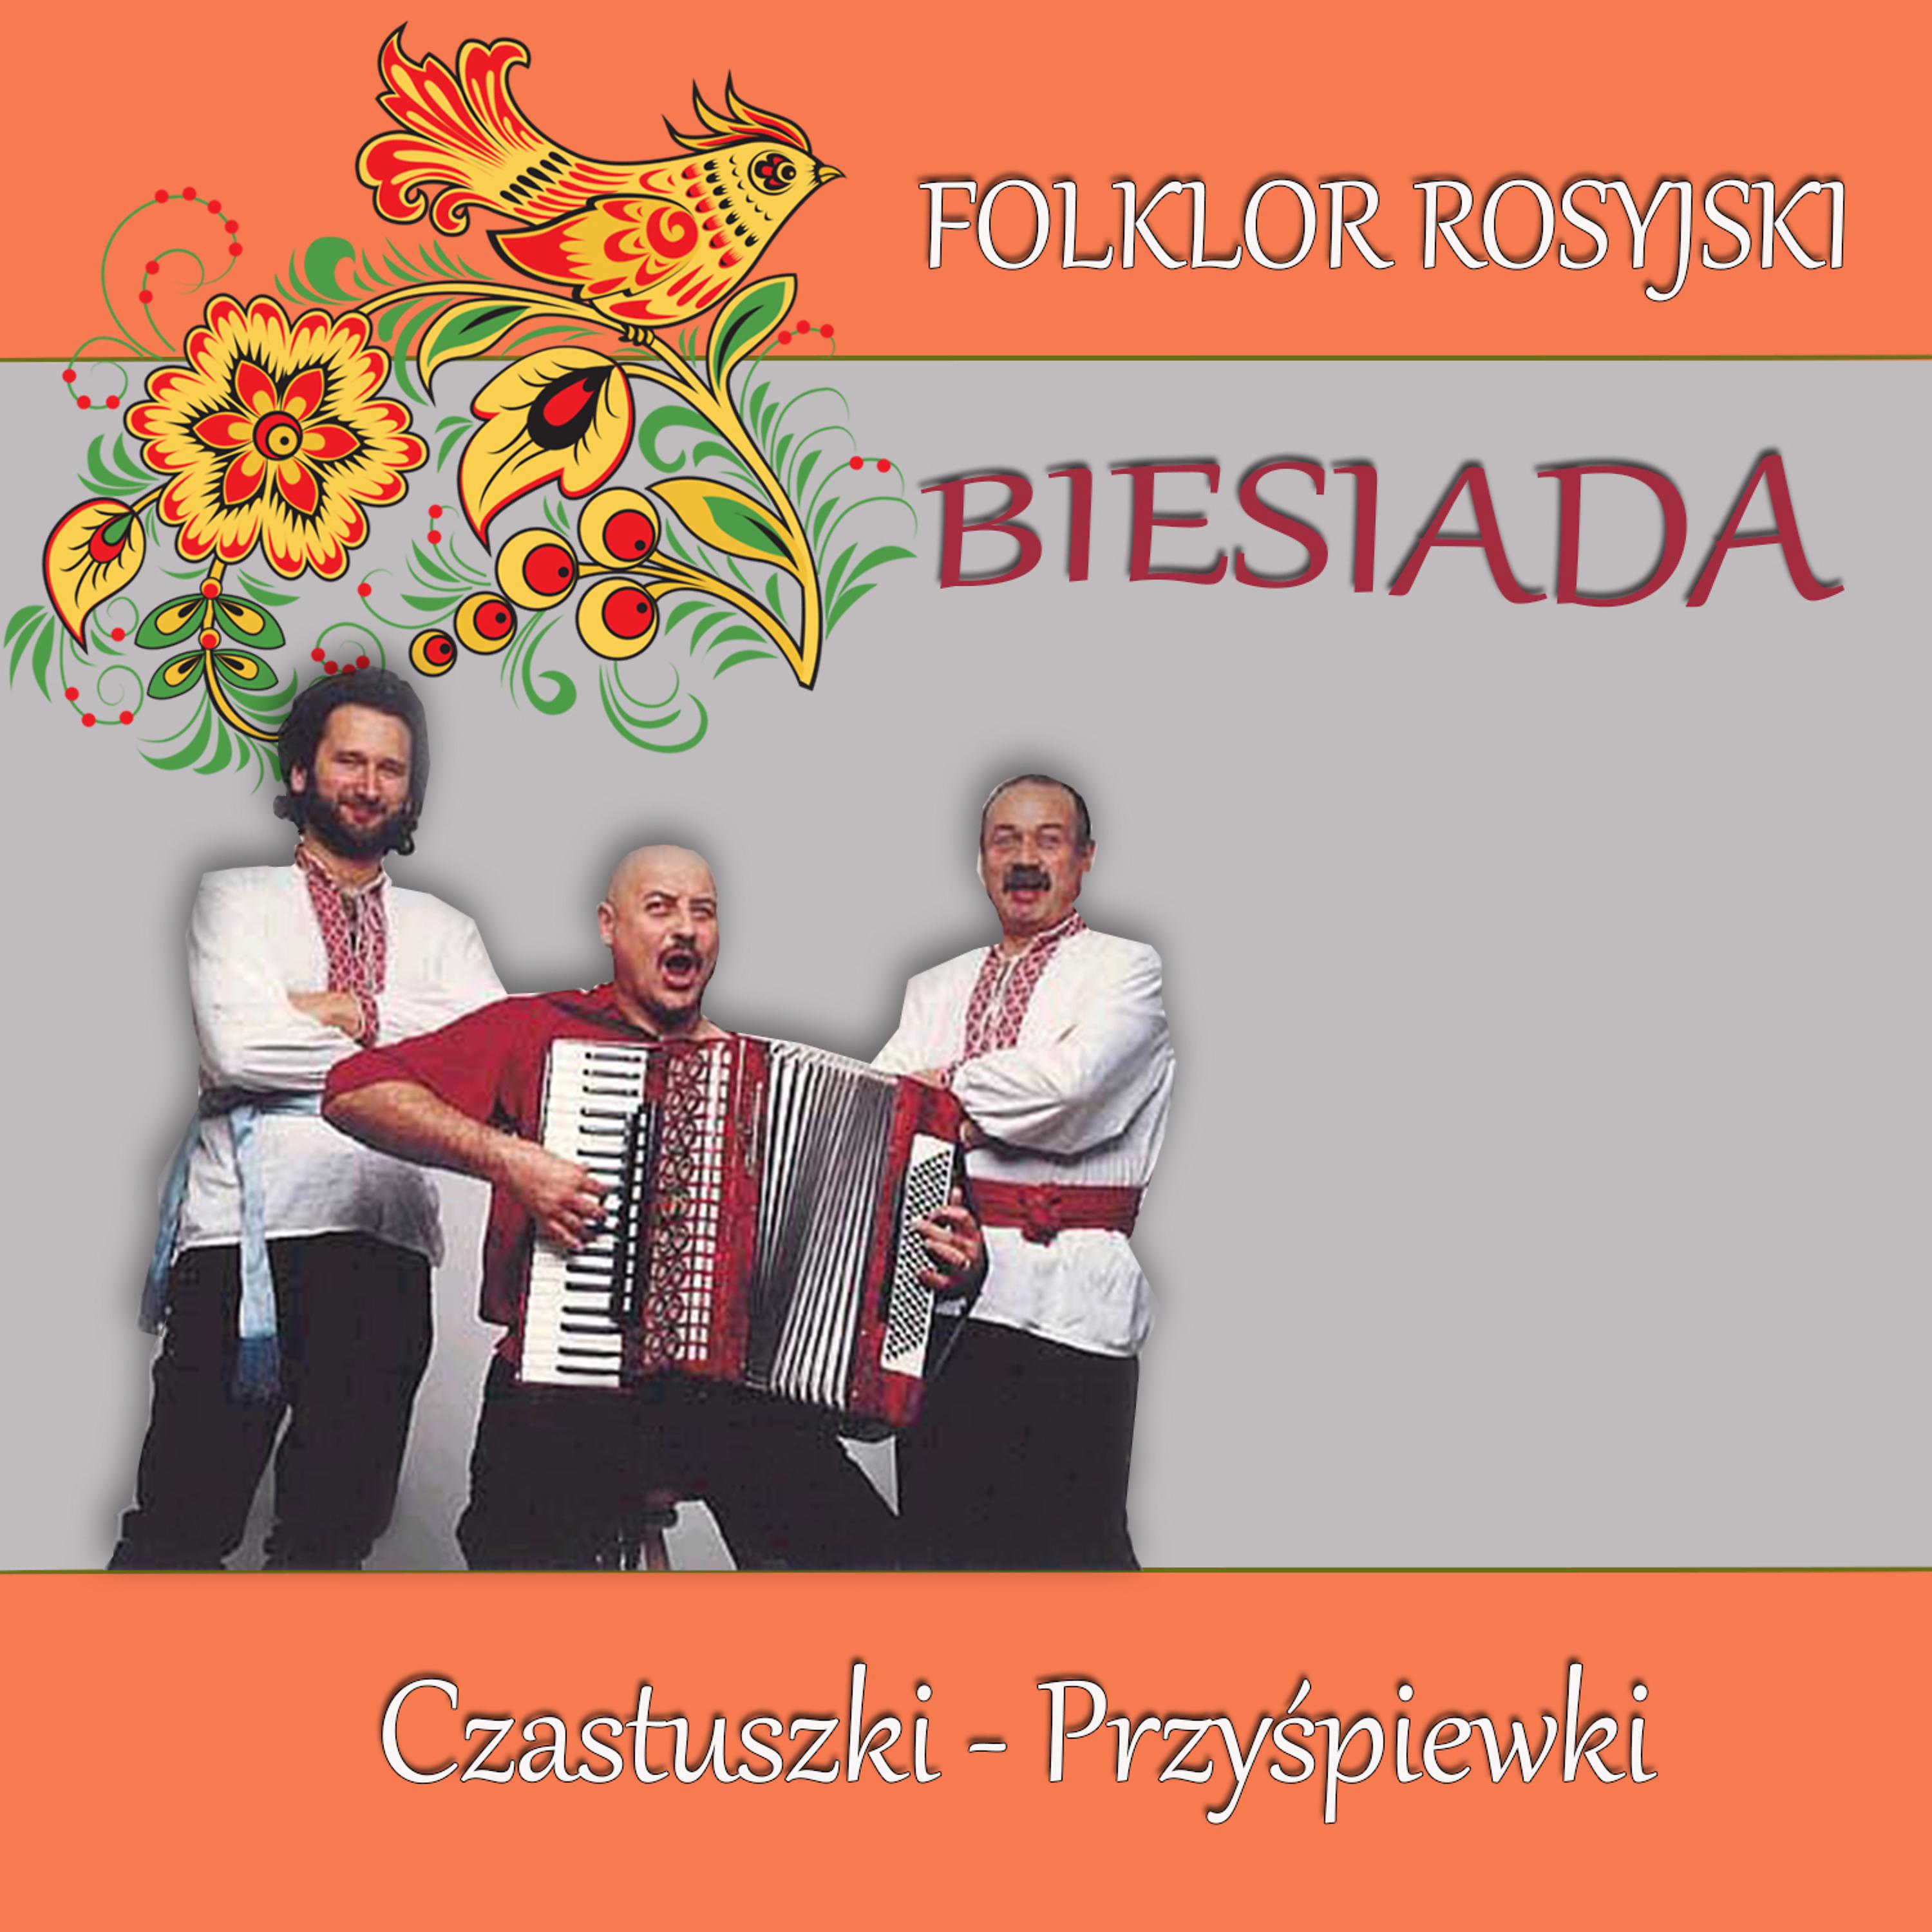 Постер альбома Folklor Rosyjski Biesiada Czastuszki - Przyspiewki